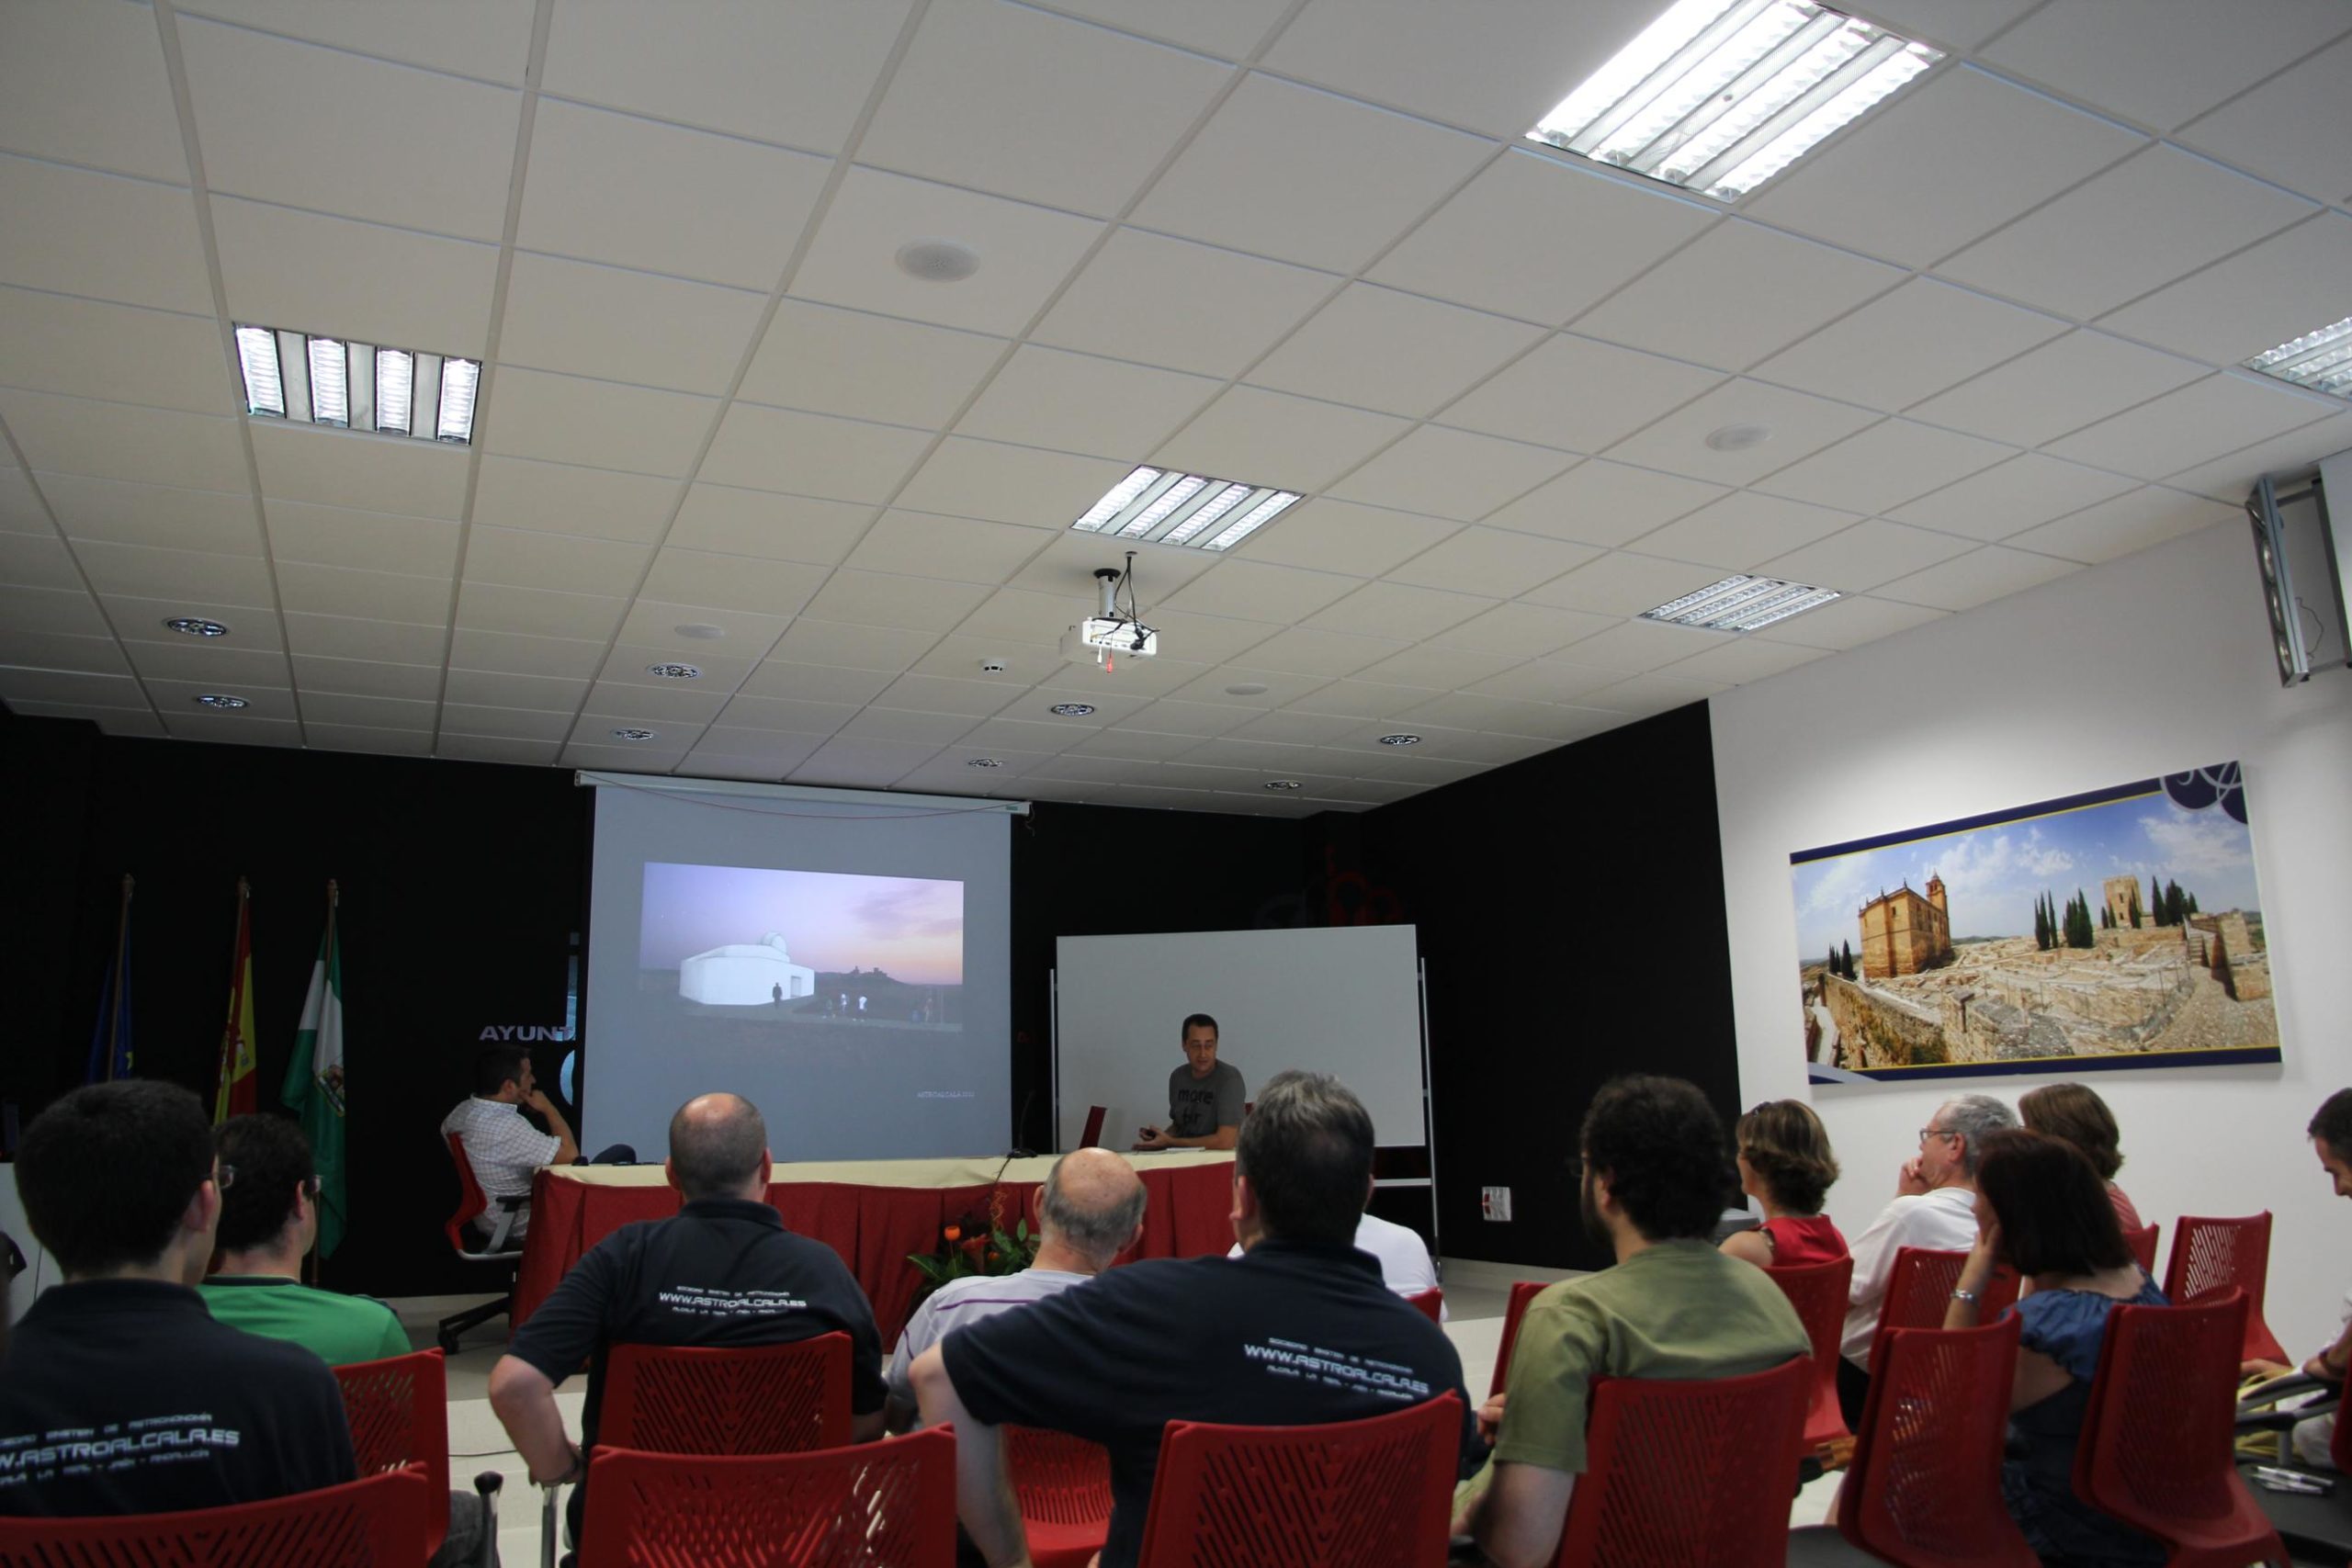 Proyecto Observatorio Astronómico Municipal de Alcalá la Real - AstroAlcalá 2011